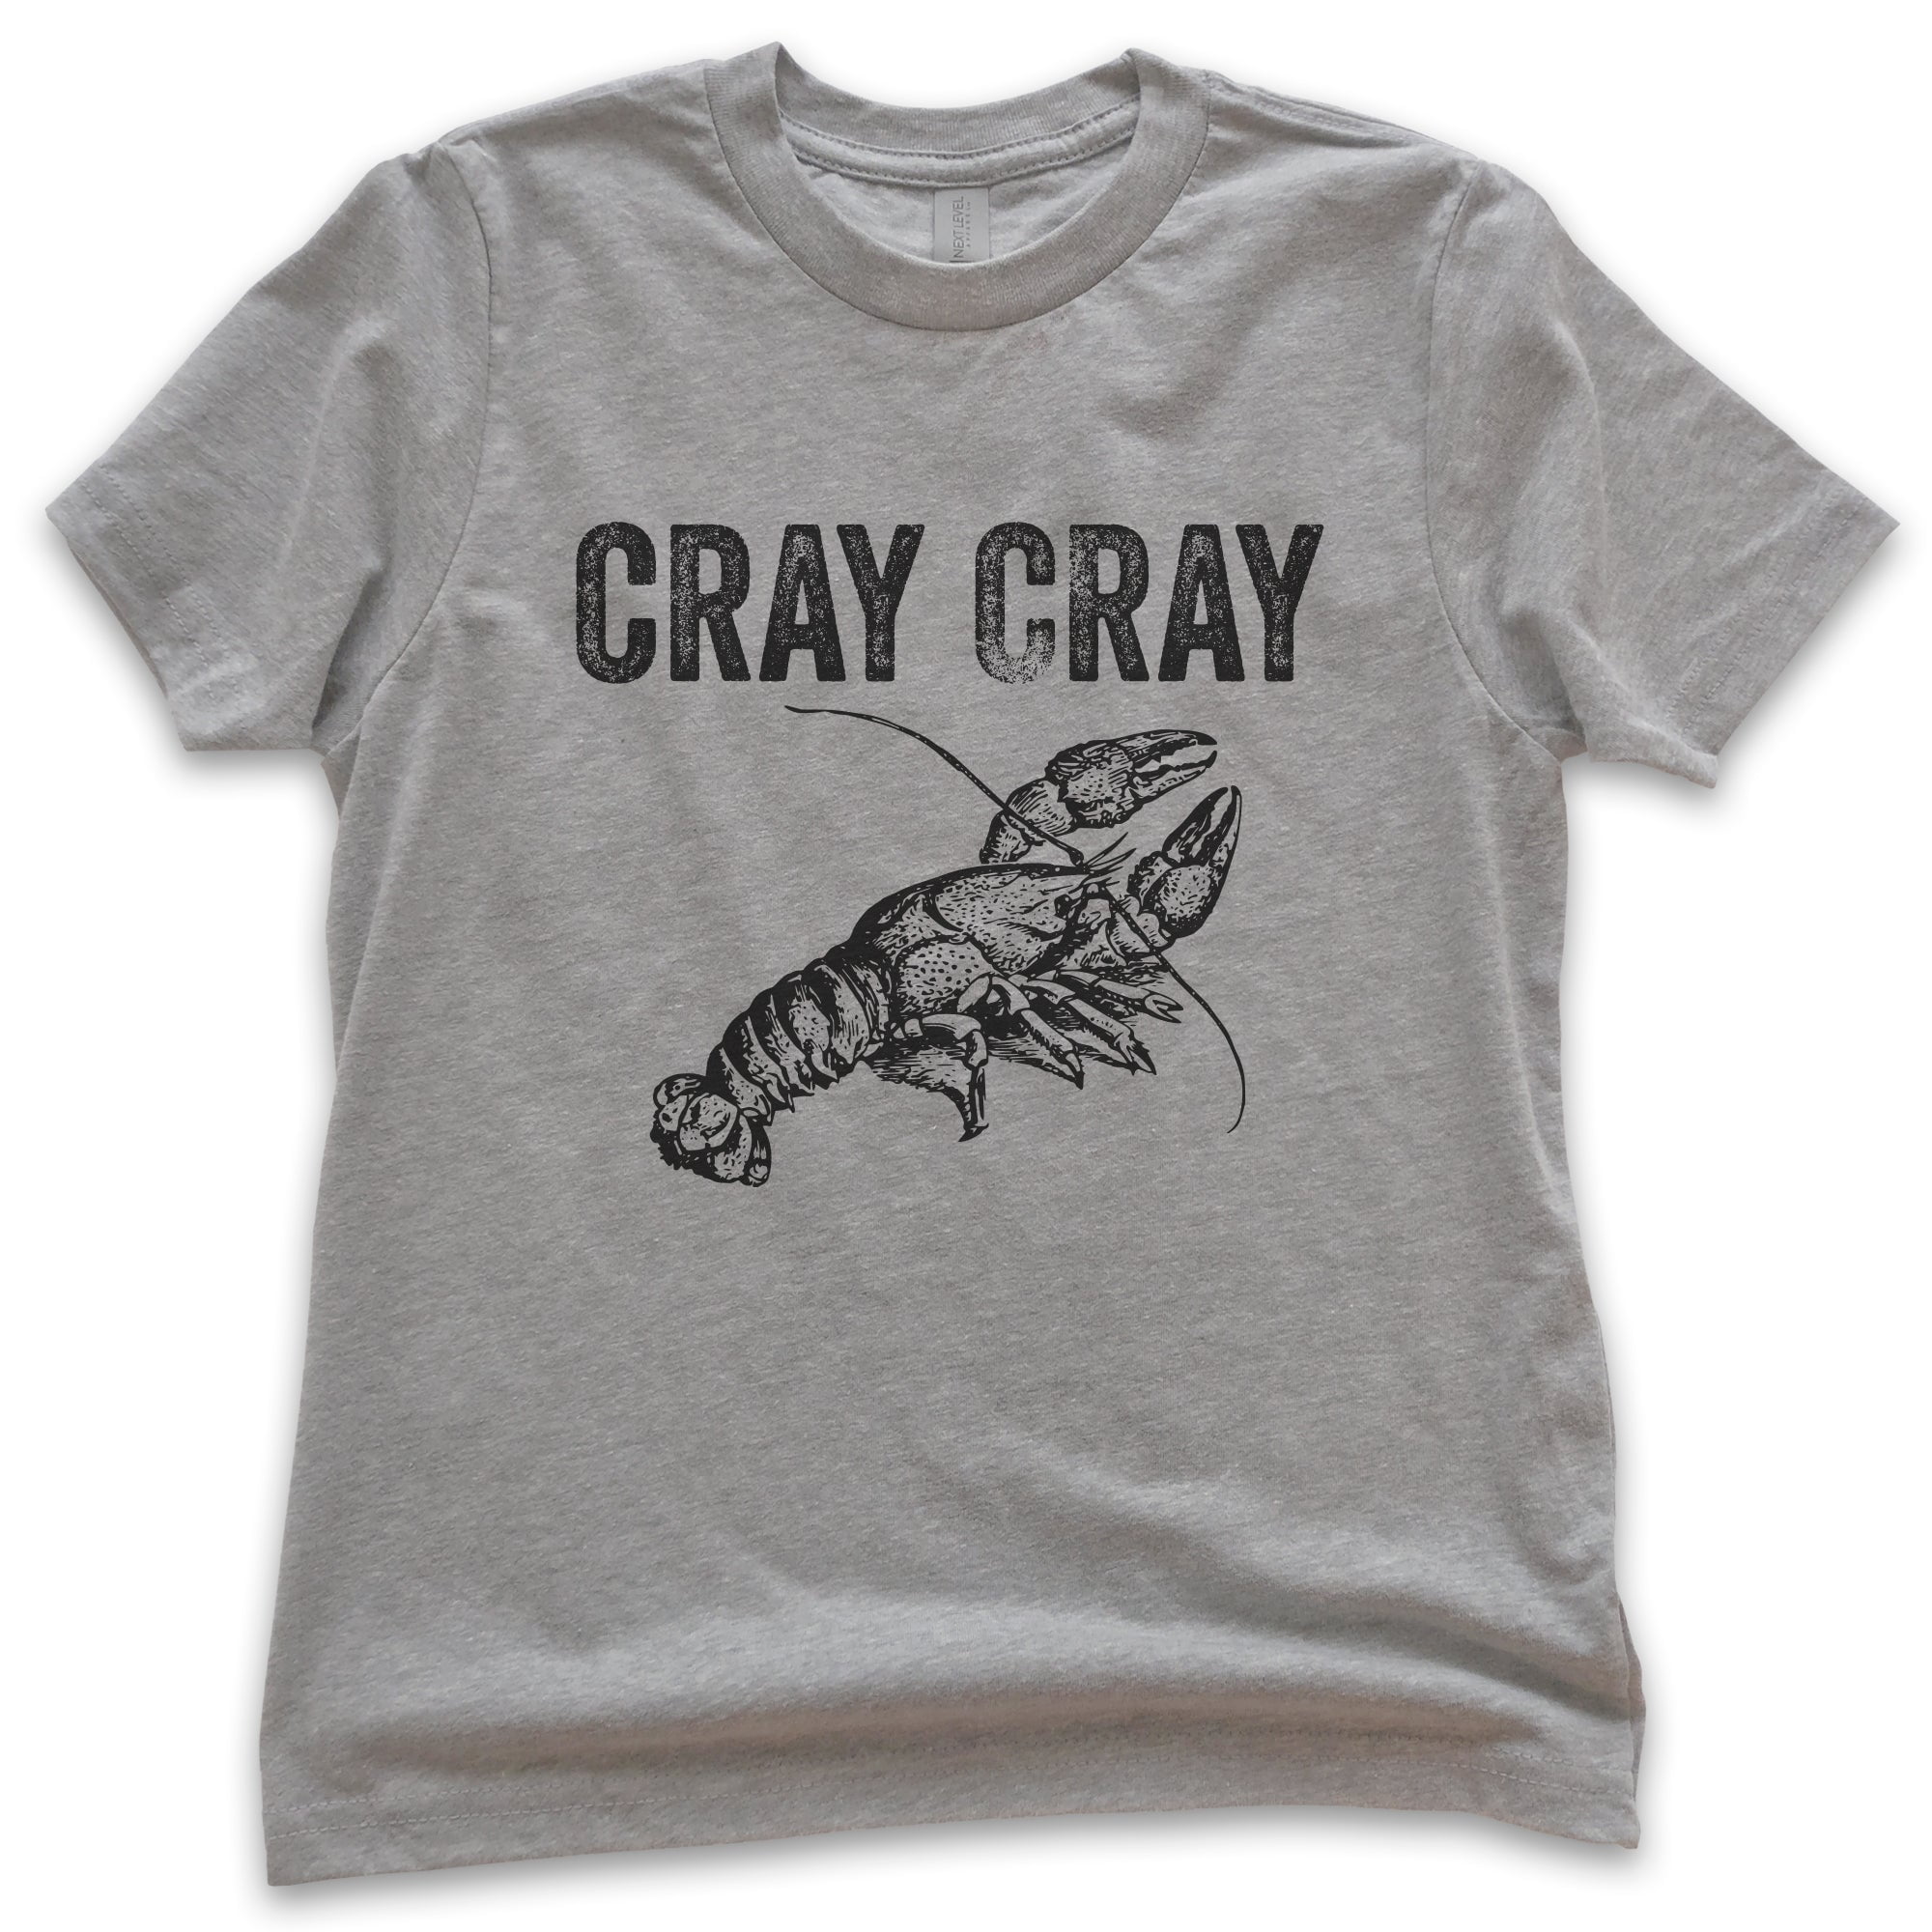 Kids Cray Cray Shirt, Youth Kids Boy Girl T-Shirt, Crayfish Shirt, Fishing  Shirt, Funny Fish Shirt, Light Pink, Medium 